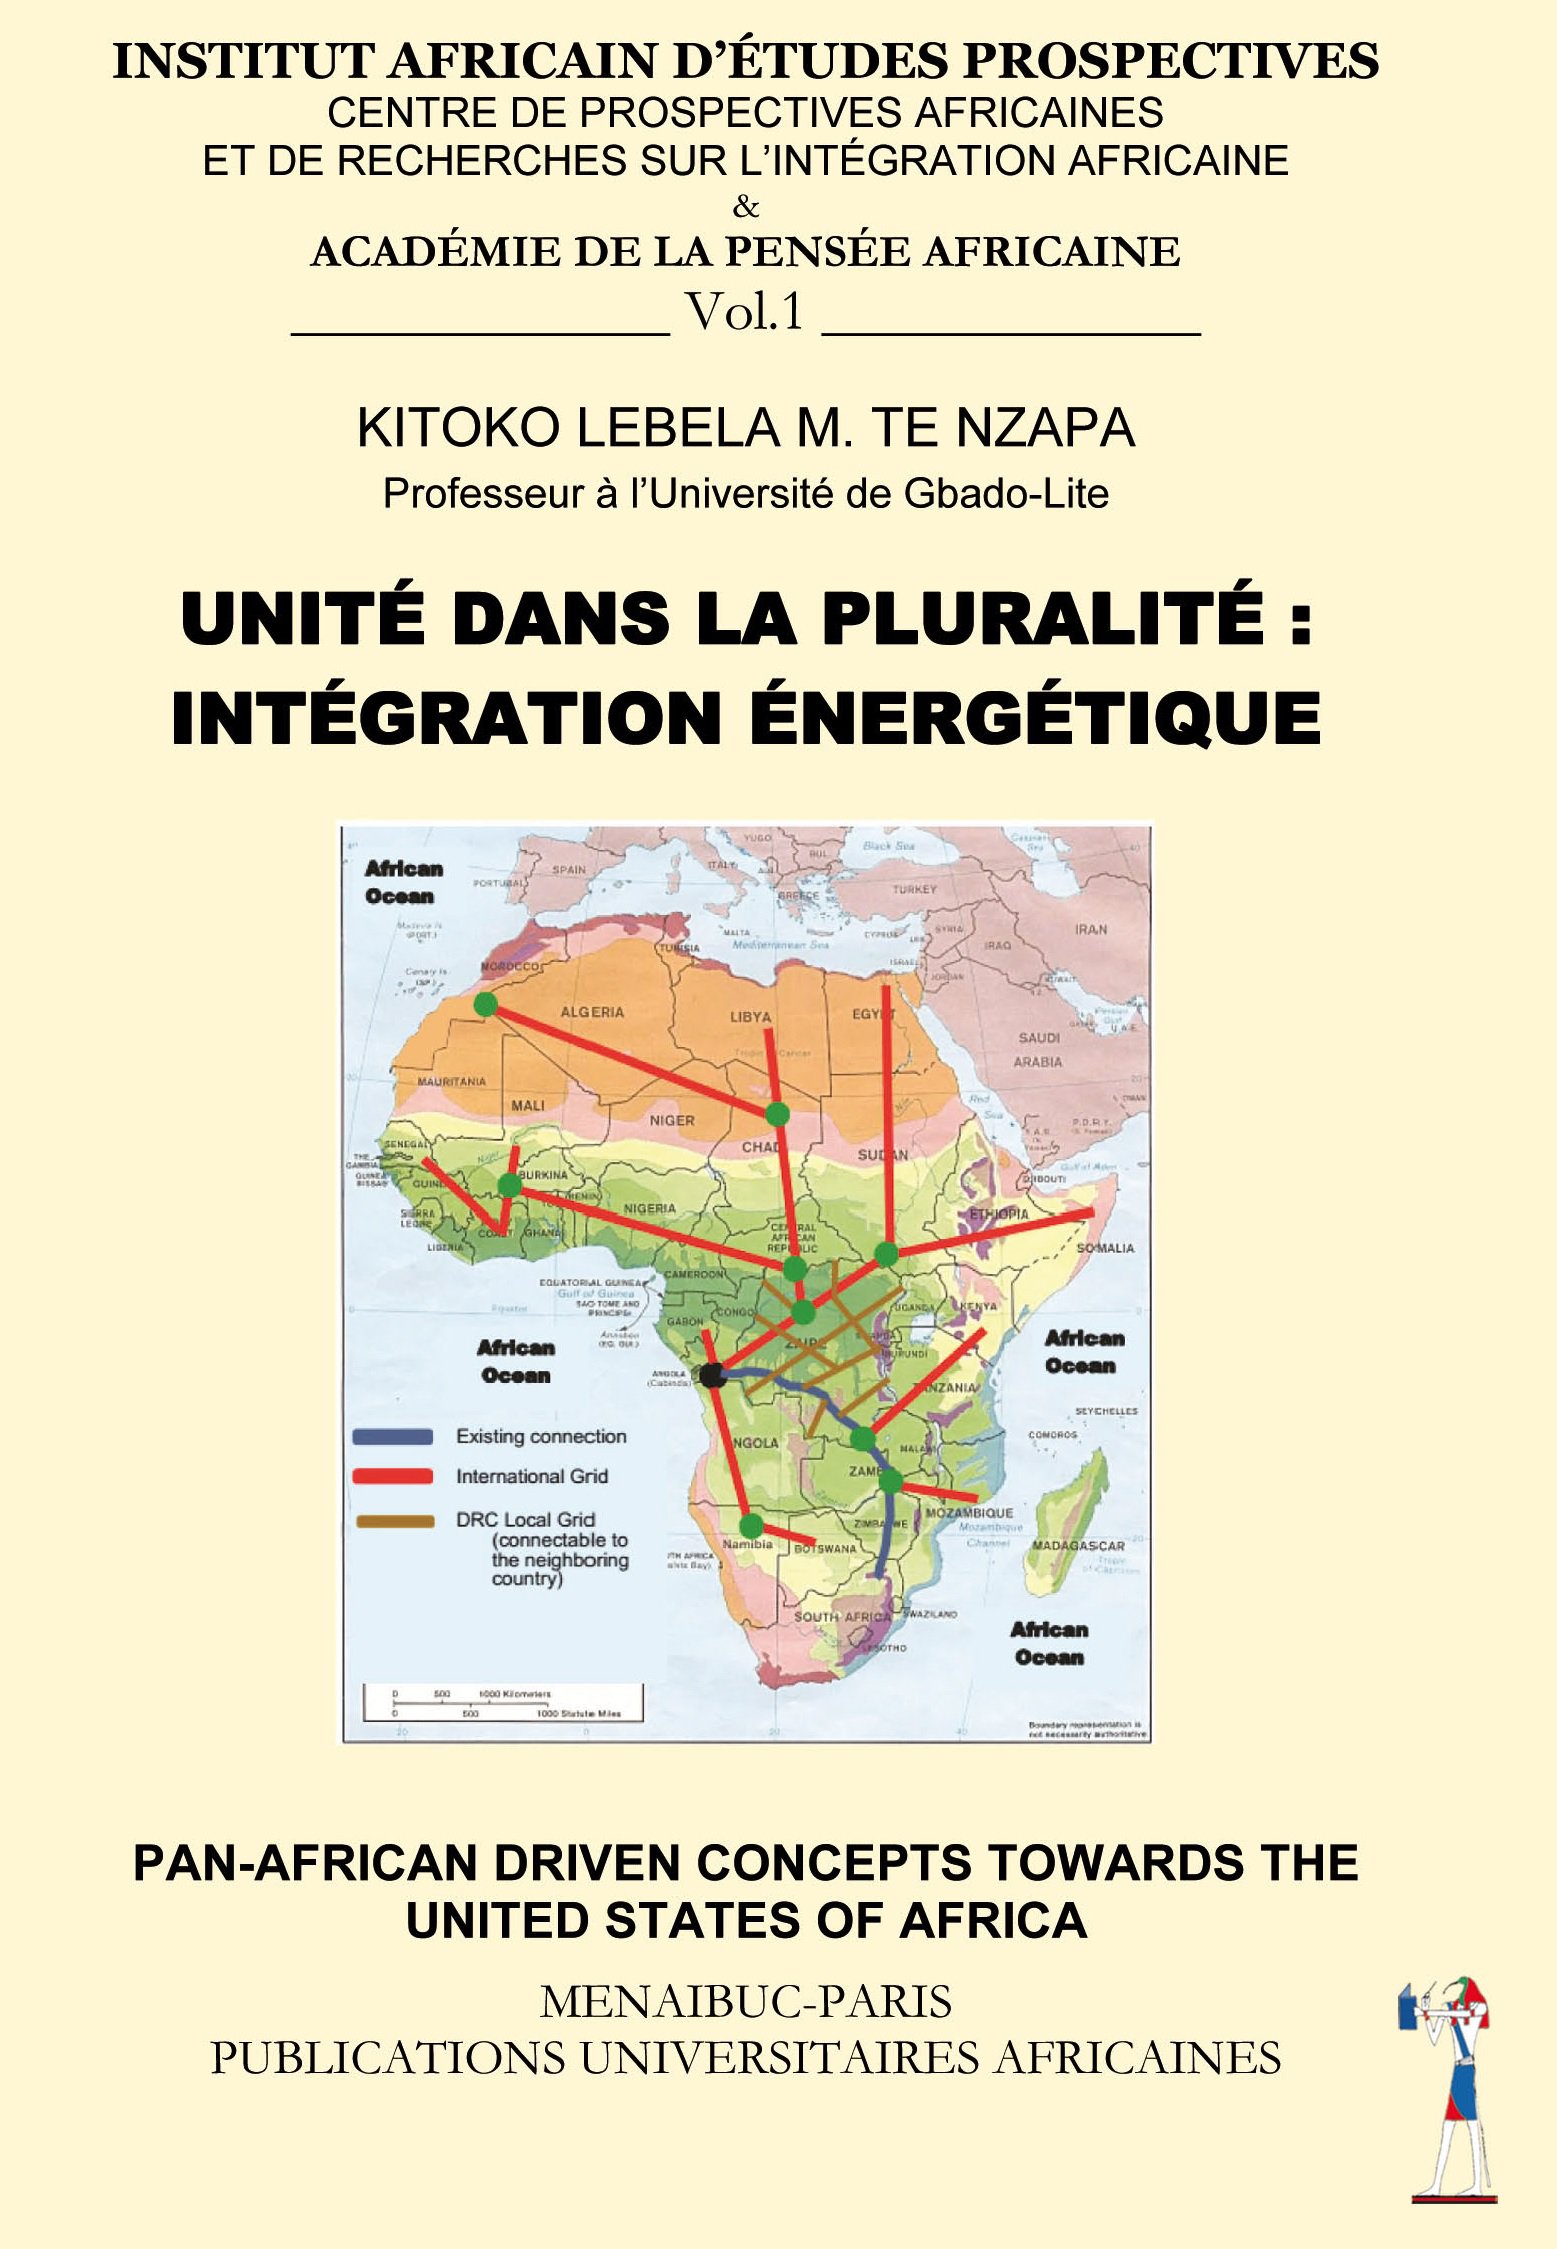 Unité dans la Pluralité : Intégration Energétique & Pan-African Driven Concepts Towards the United States of Africa